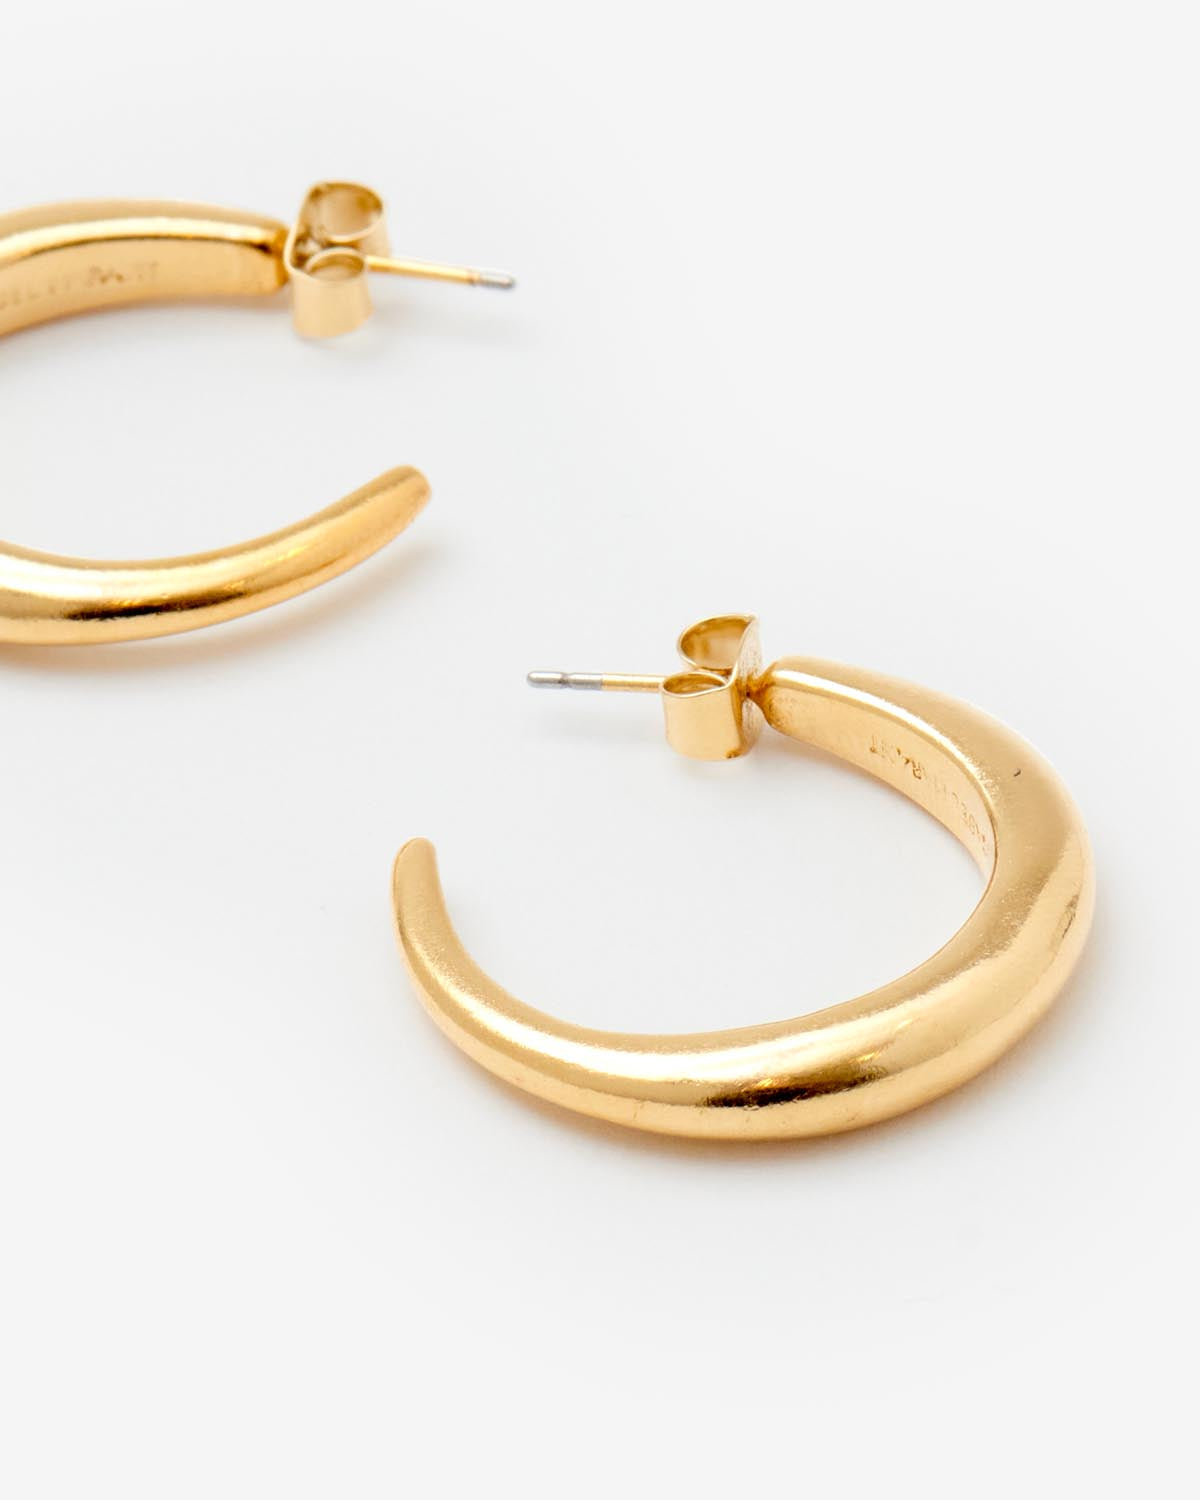 Ring earrings Woman Golden 2